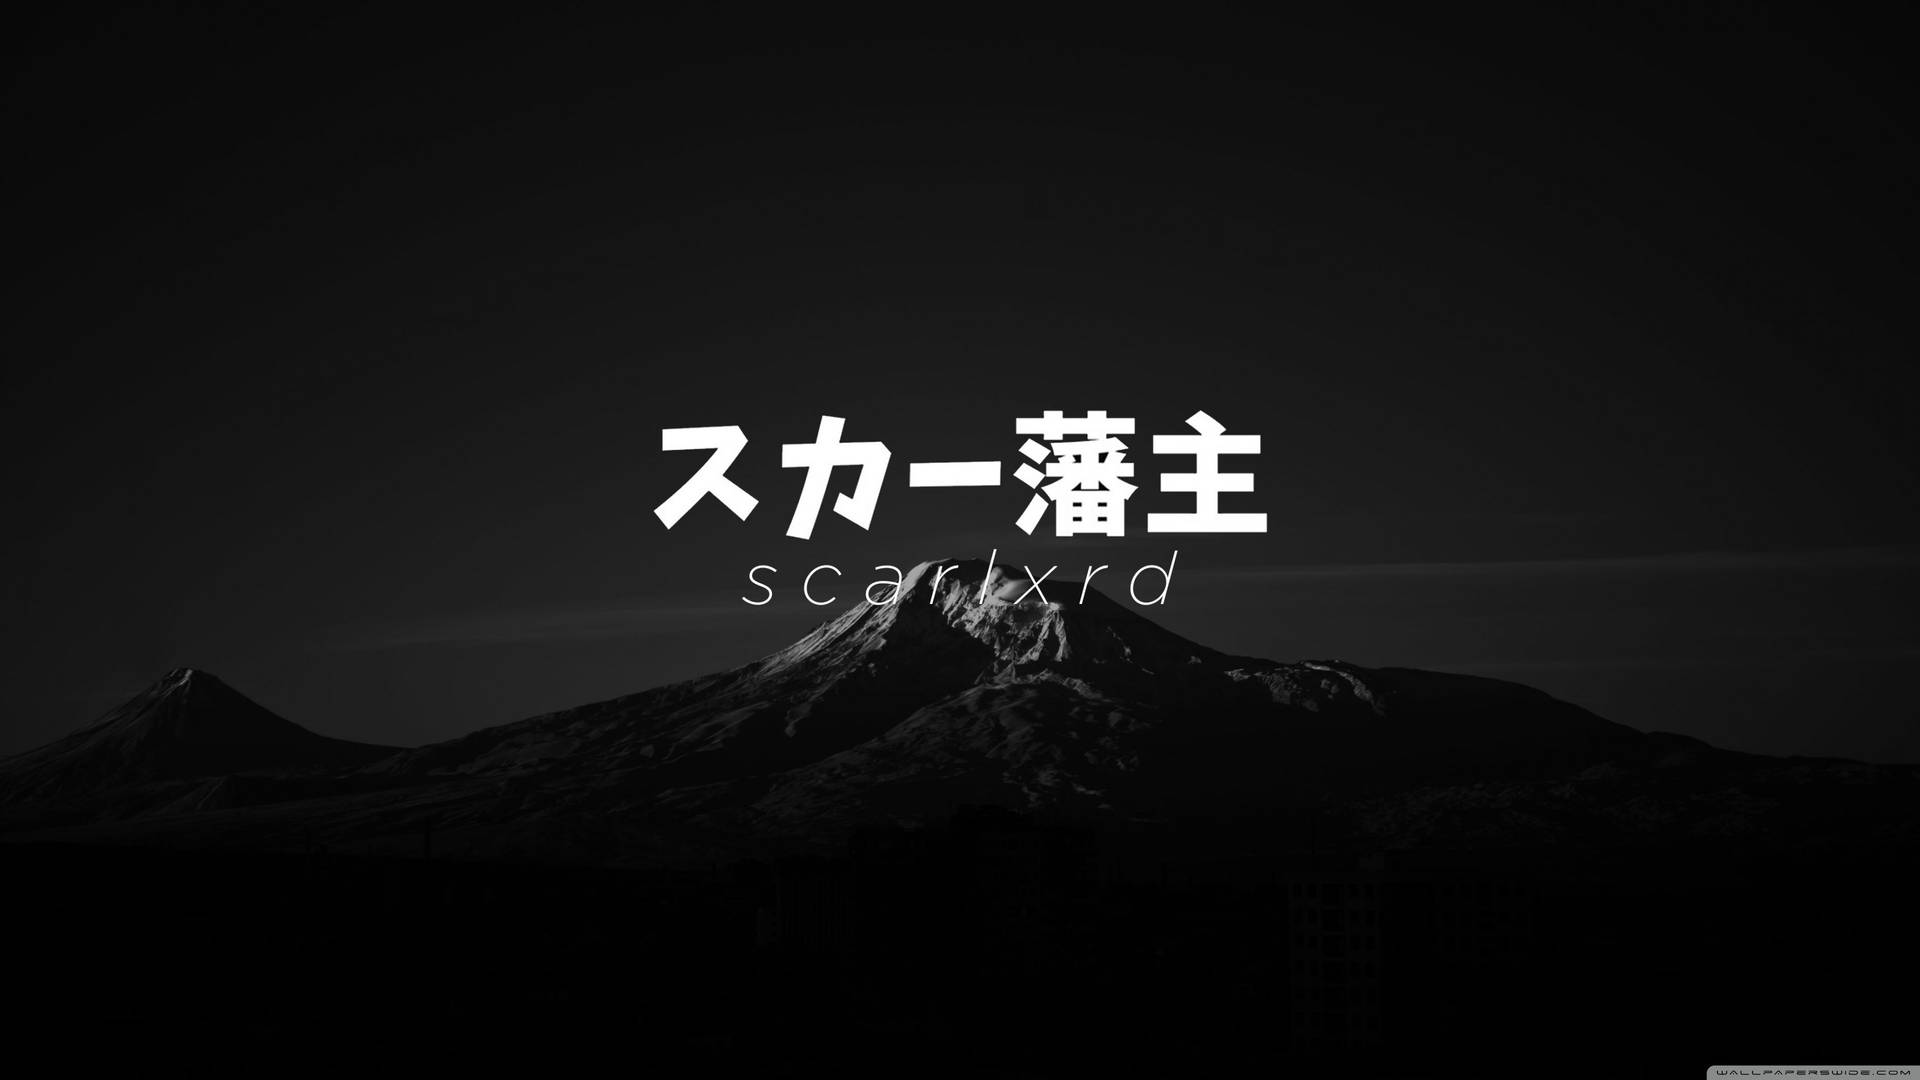 Scarlxrdmount Fuji Skulle Kunna Vara En Fantastisk Tapet För Din Dator Eller Mobil. Wallpaper